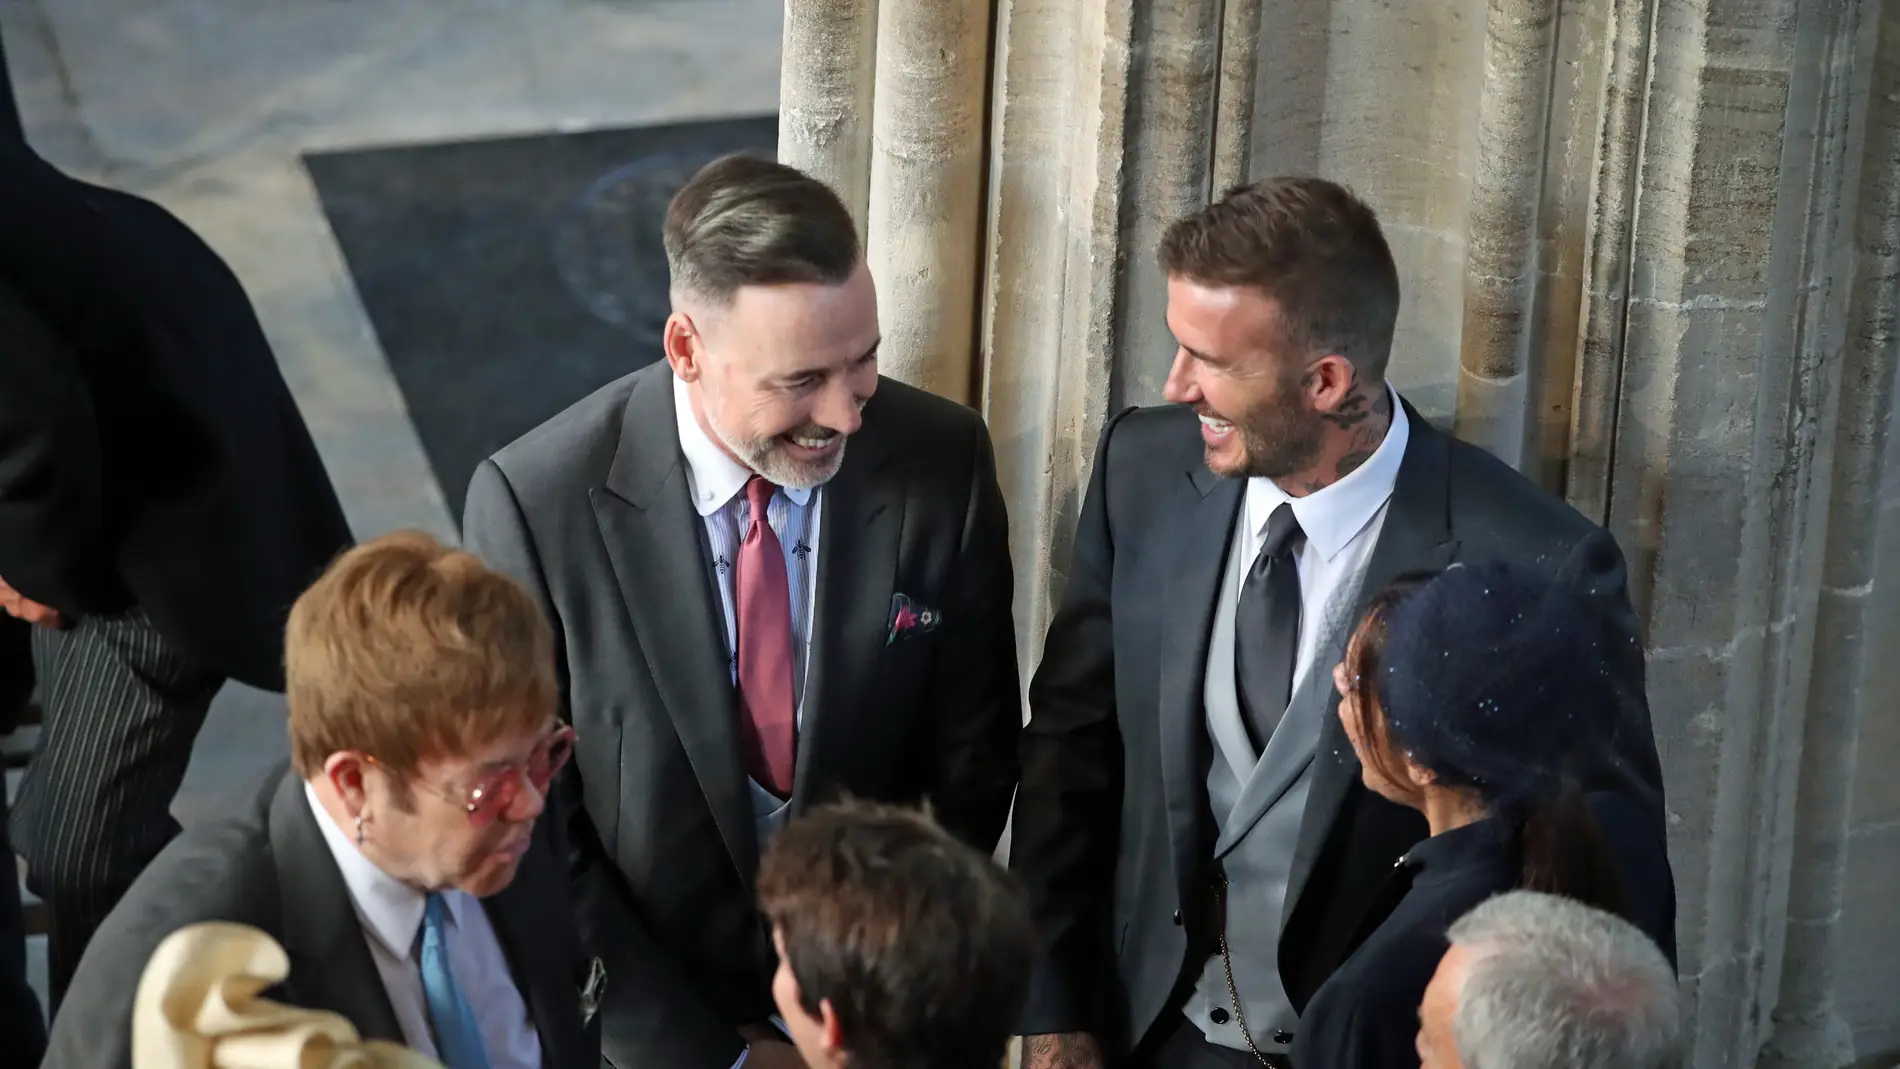 David y Victoria Beckham hablando con Elton John, David Furnish, Sofia Wellesley y James Blunt en la boda del príncipe Harry y Meghan Markle